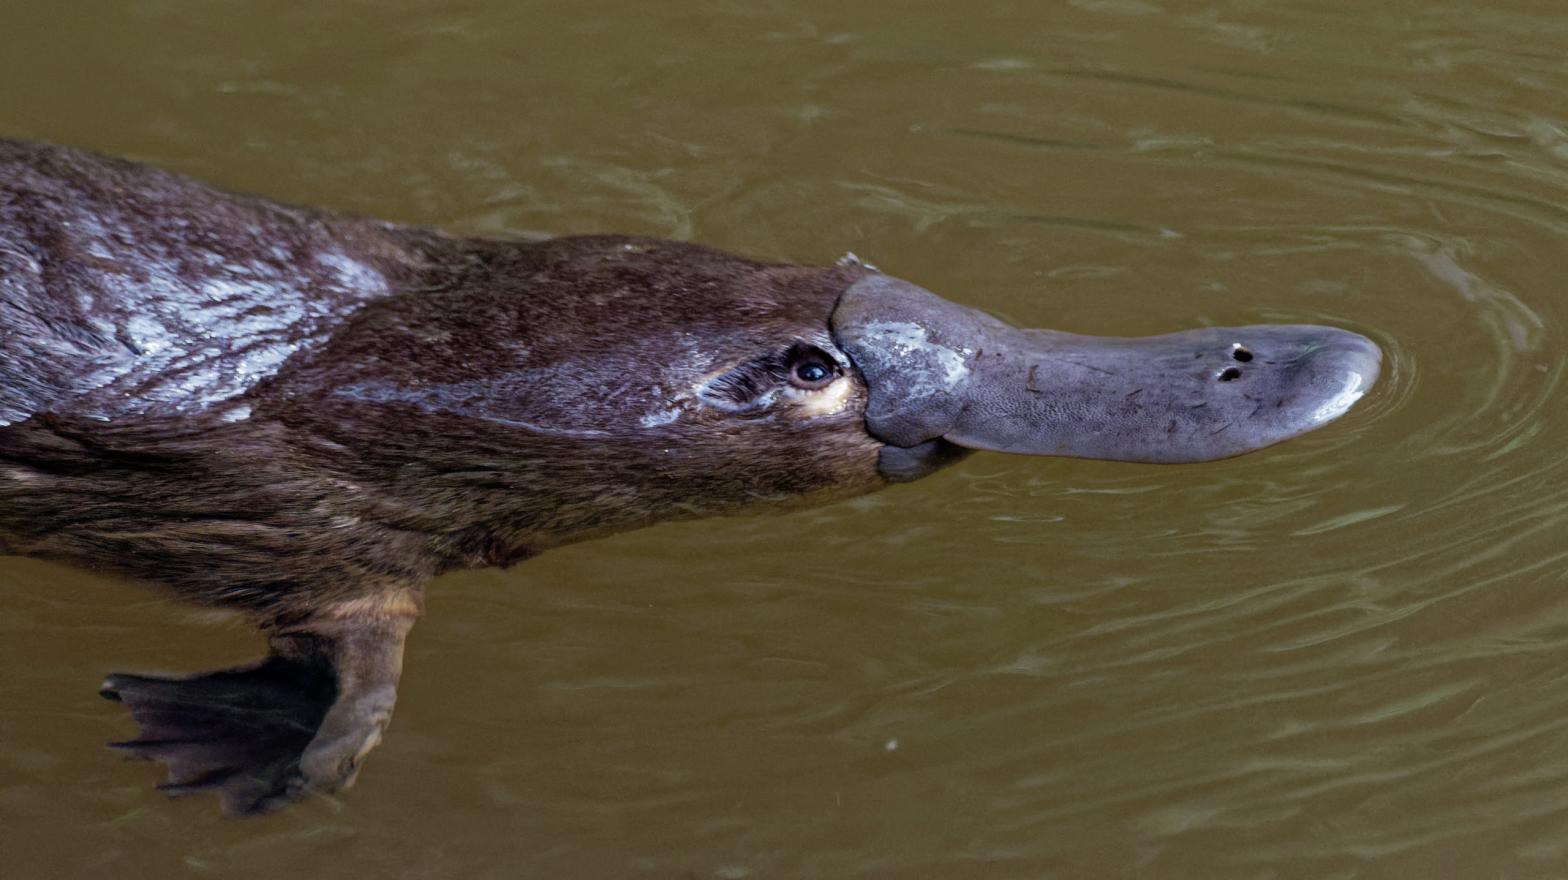 A duck-billed platypus. (Photo: Martin Pelanek, Shutterstock)